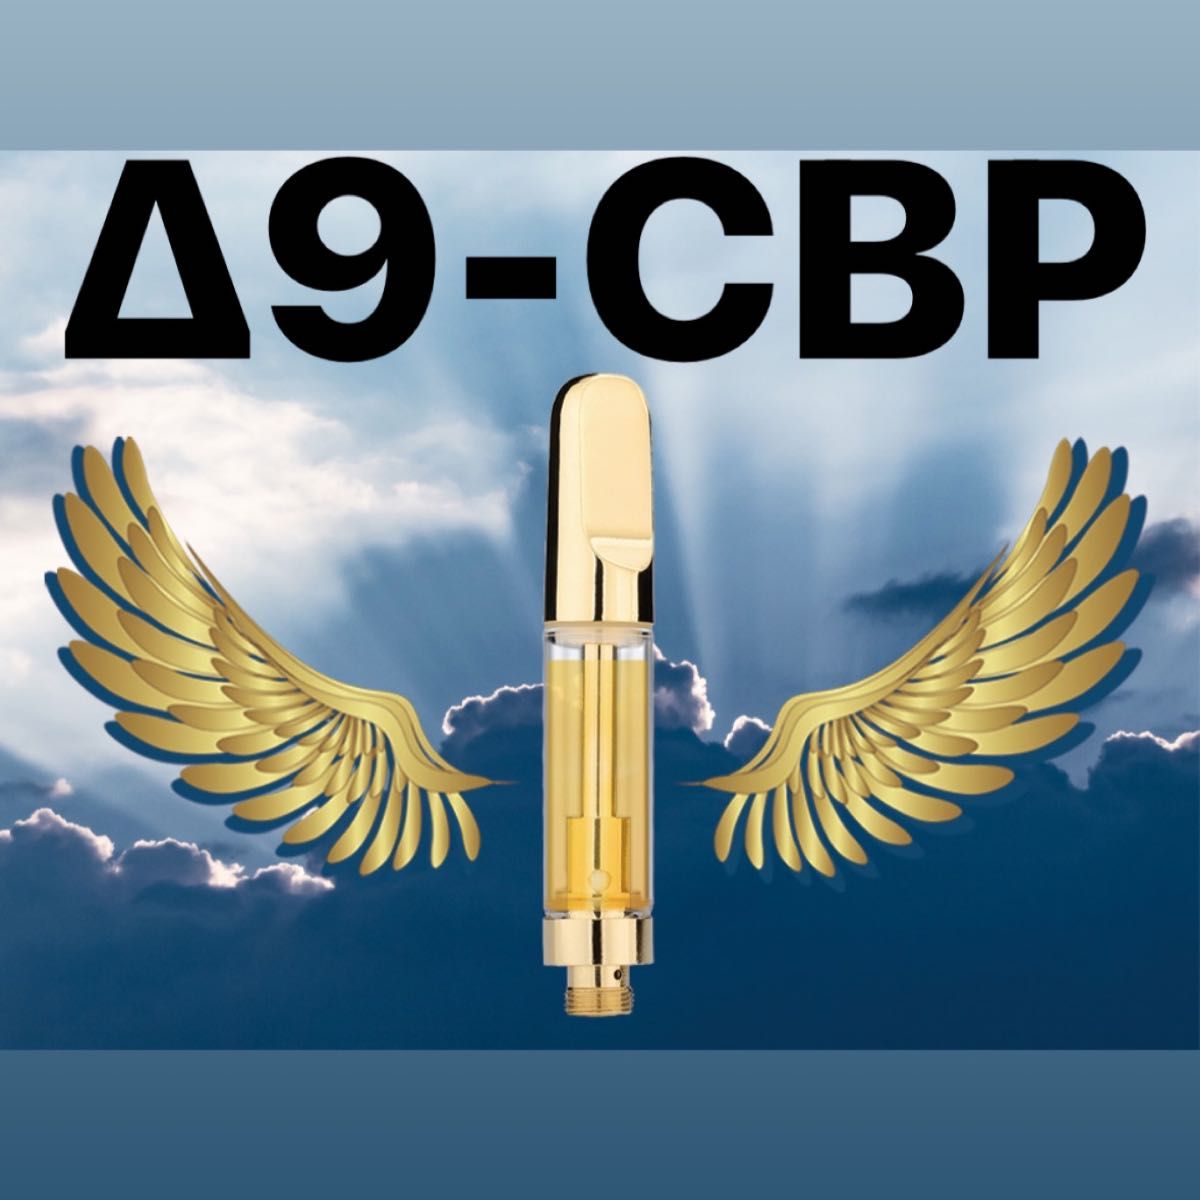 Δ9-CBP リキッド 1ml  80%   O.G.kushフレーバー　420ゲリラセール第12弾